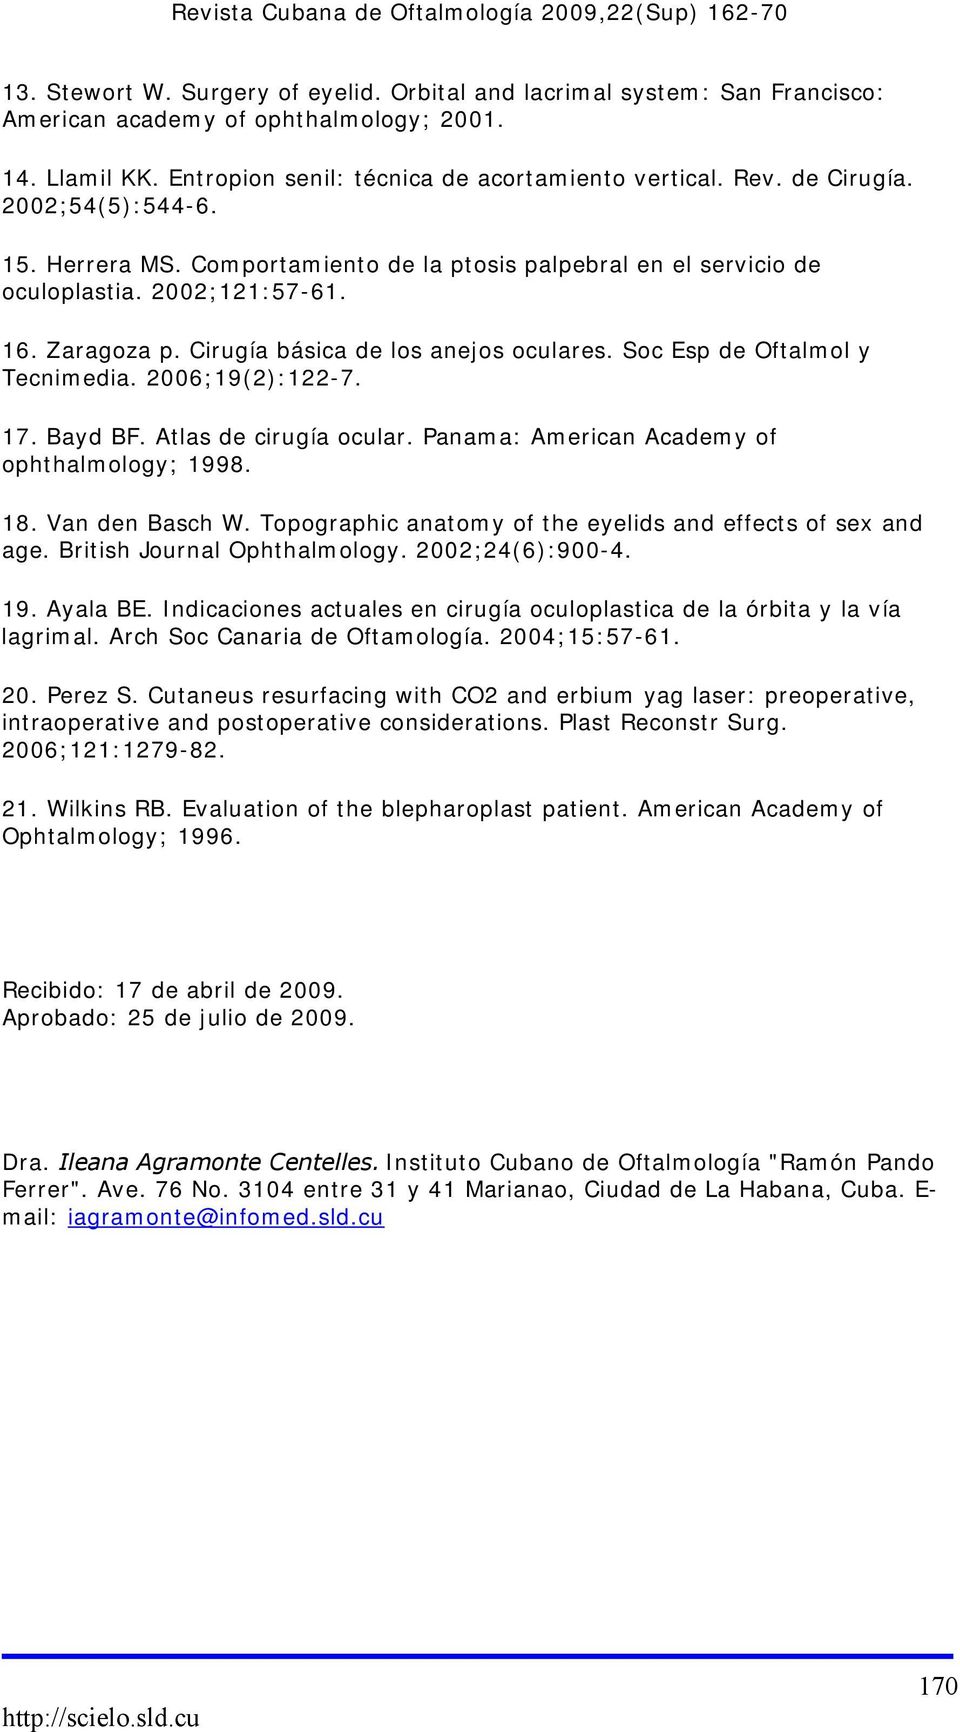 Soc Esp de Oftalmol y Tecnimedia. 2006;19(2):122-7. 17. Bayd BF. Atlas de cirugía ocular. Panama: American Academy of ophthalmology; 1998. 18. Van den Basch W.